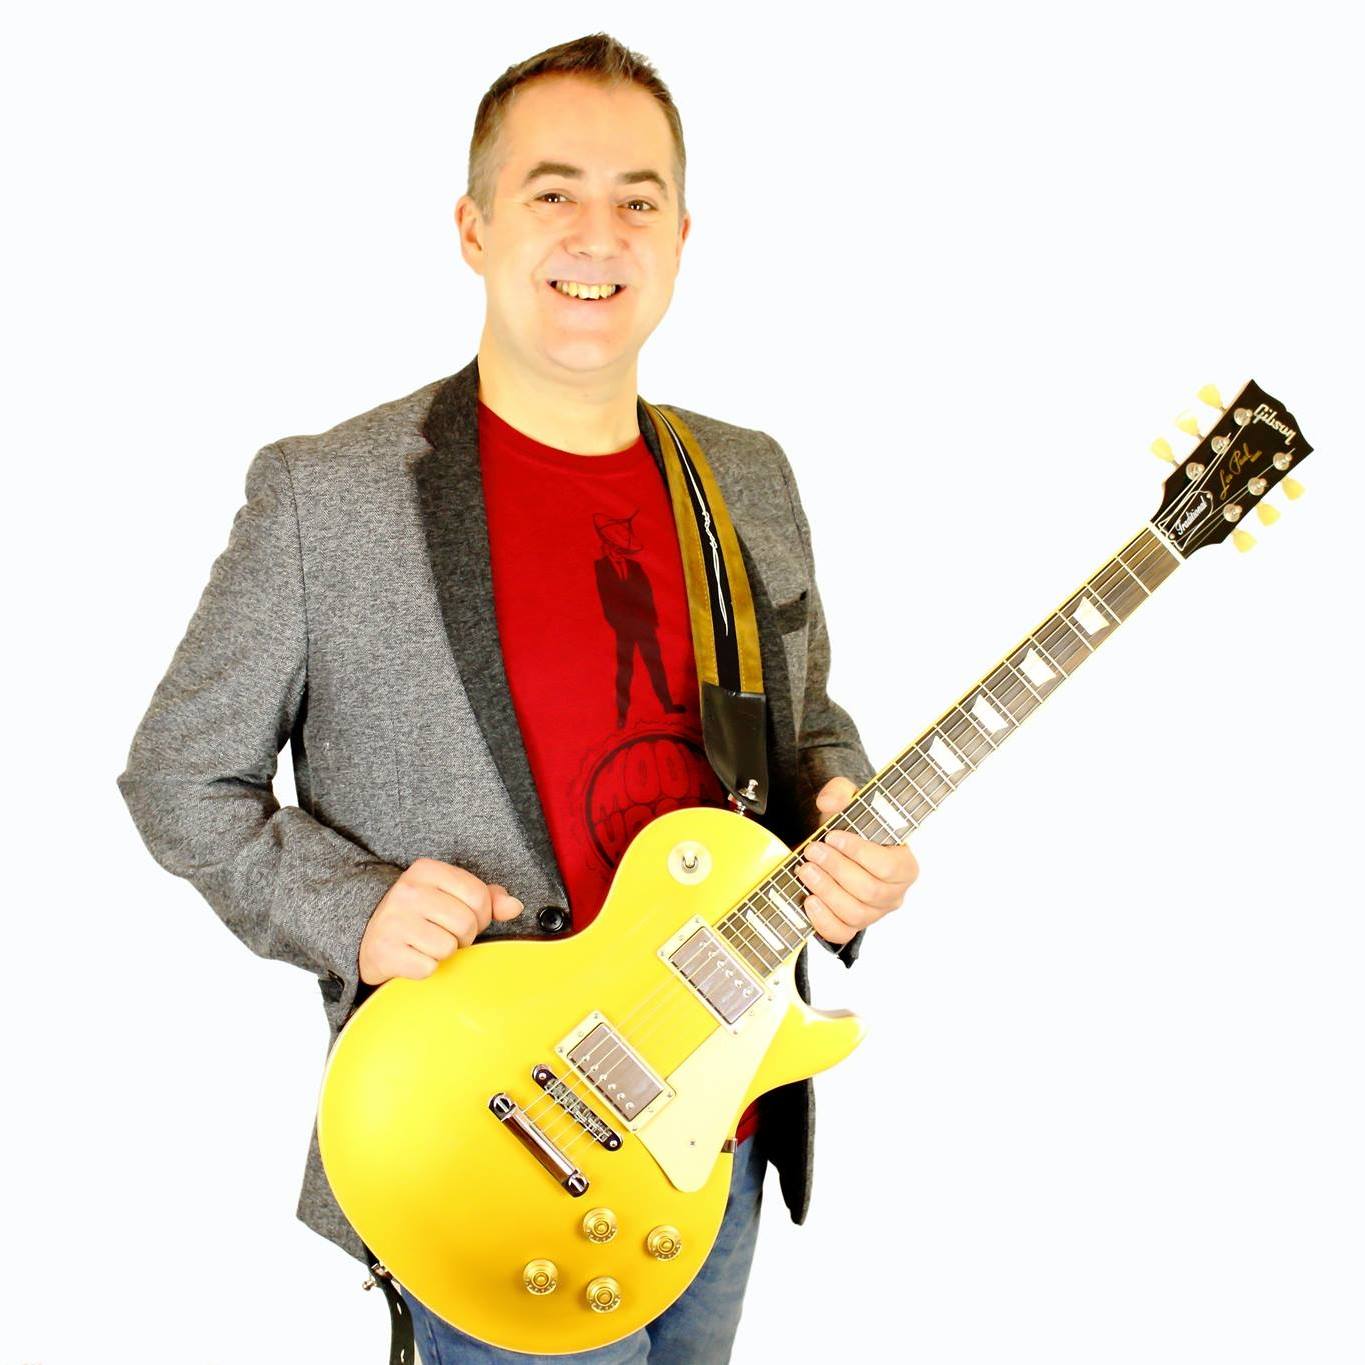 Play an instrument Image for Dan Jones Guitar School